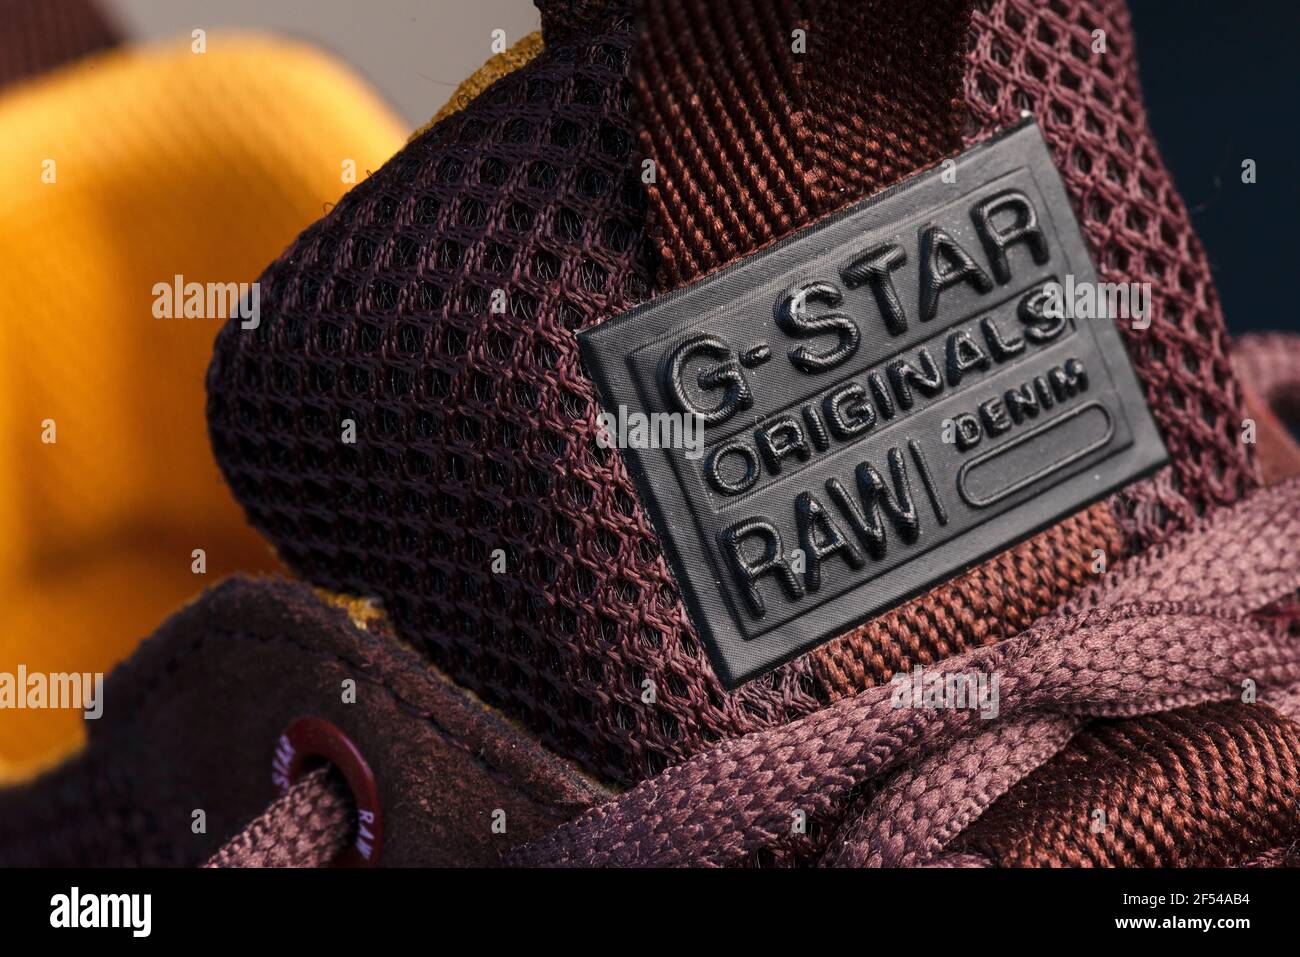 Etichetta G-Star Raw sul colore bordeaux scarpe casual uomo vicino dettagli su Foto Stock